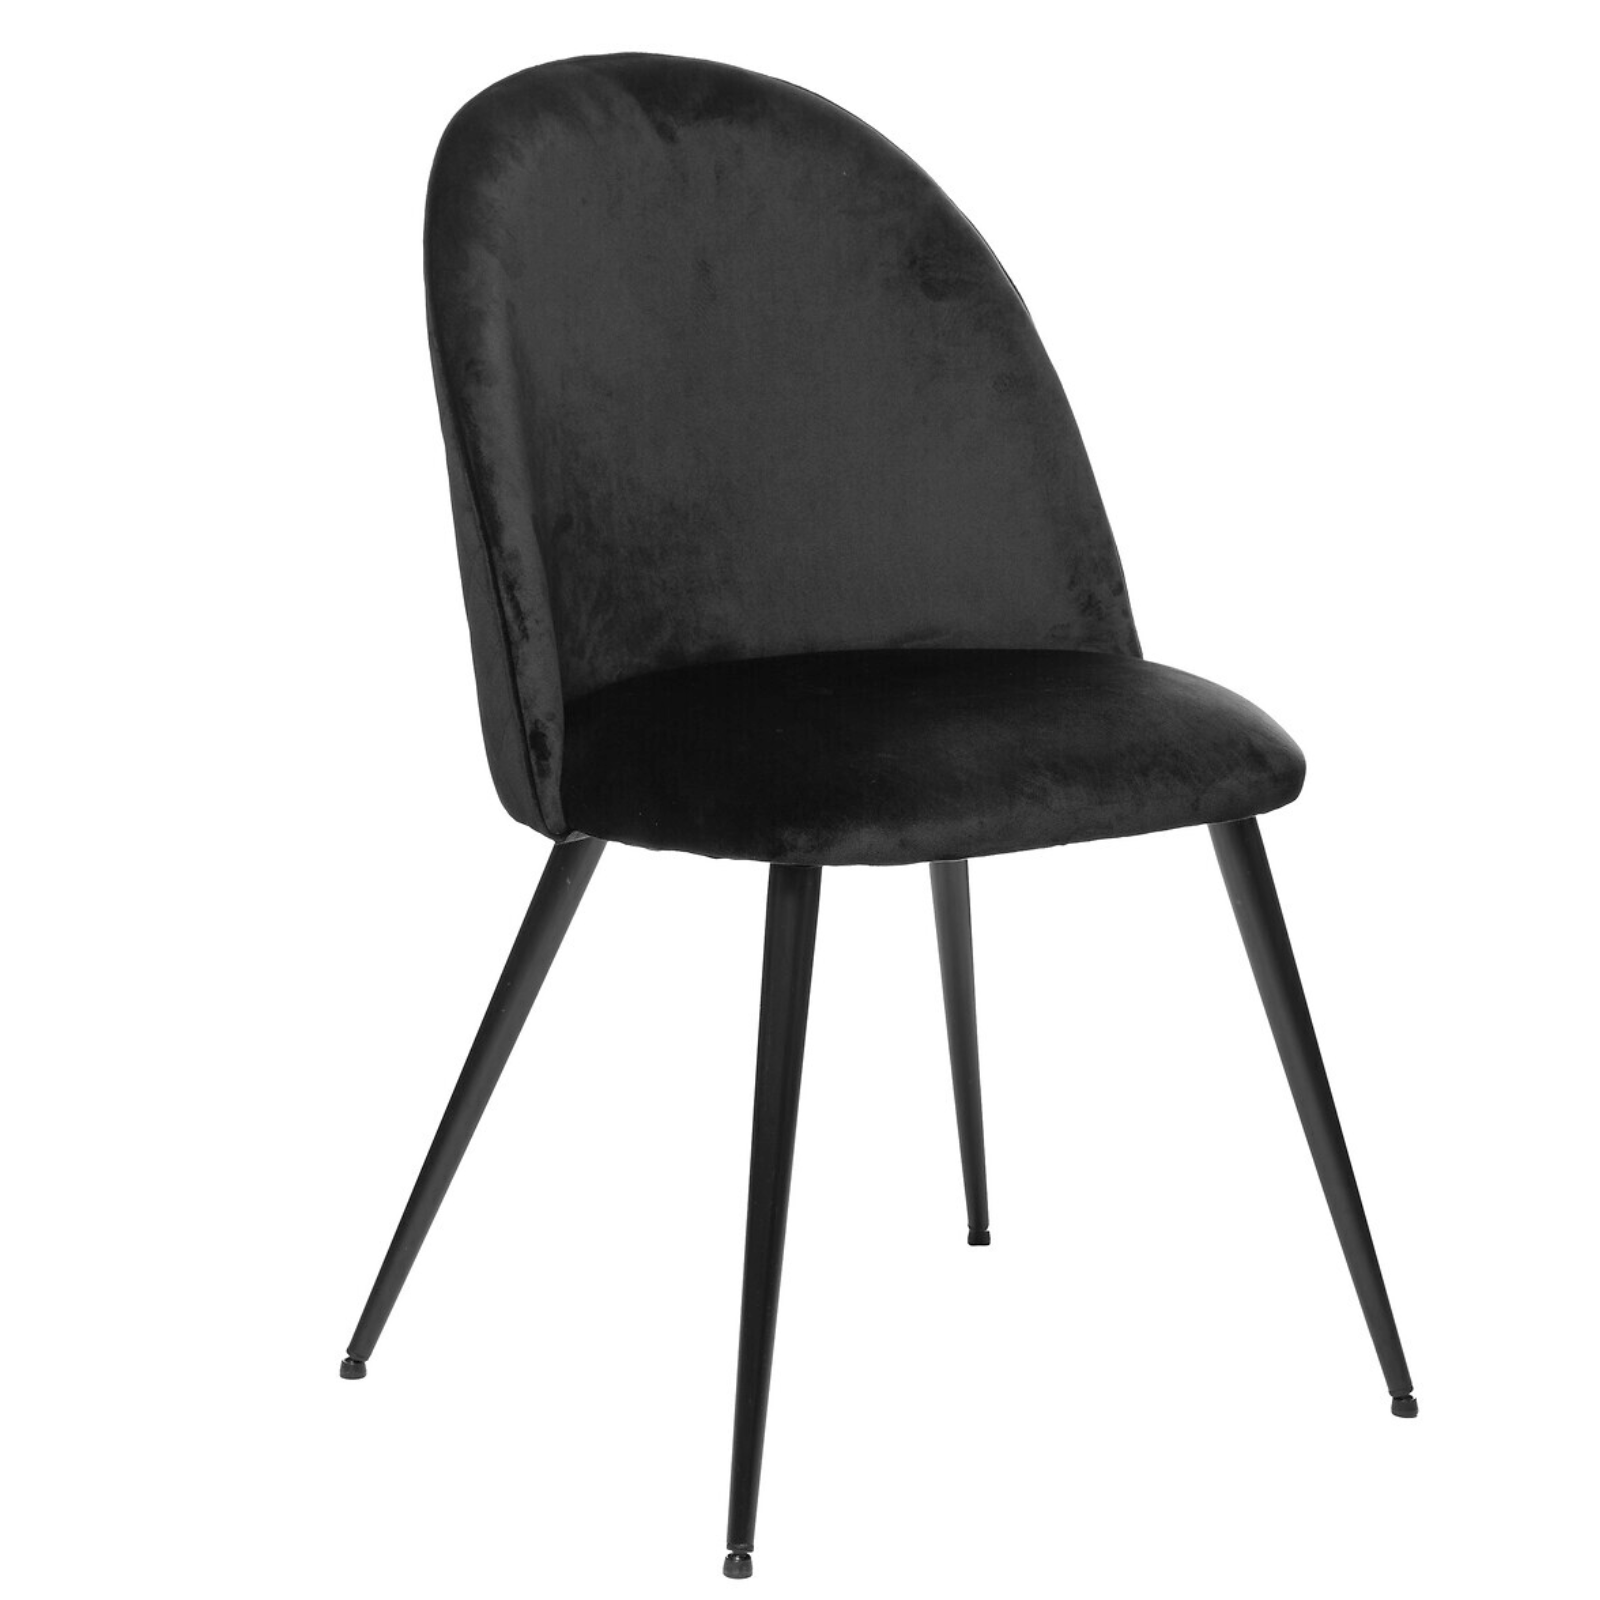 Sedia rivestita in velluto nero Vieste design moderno con gambe nere